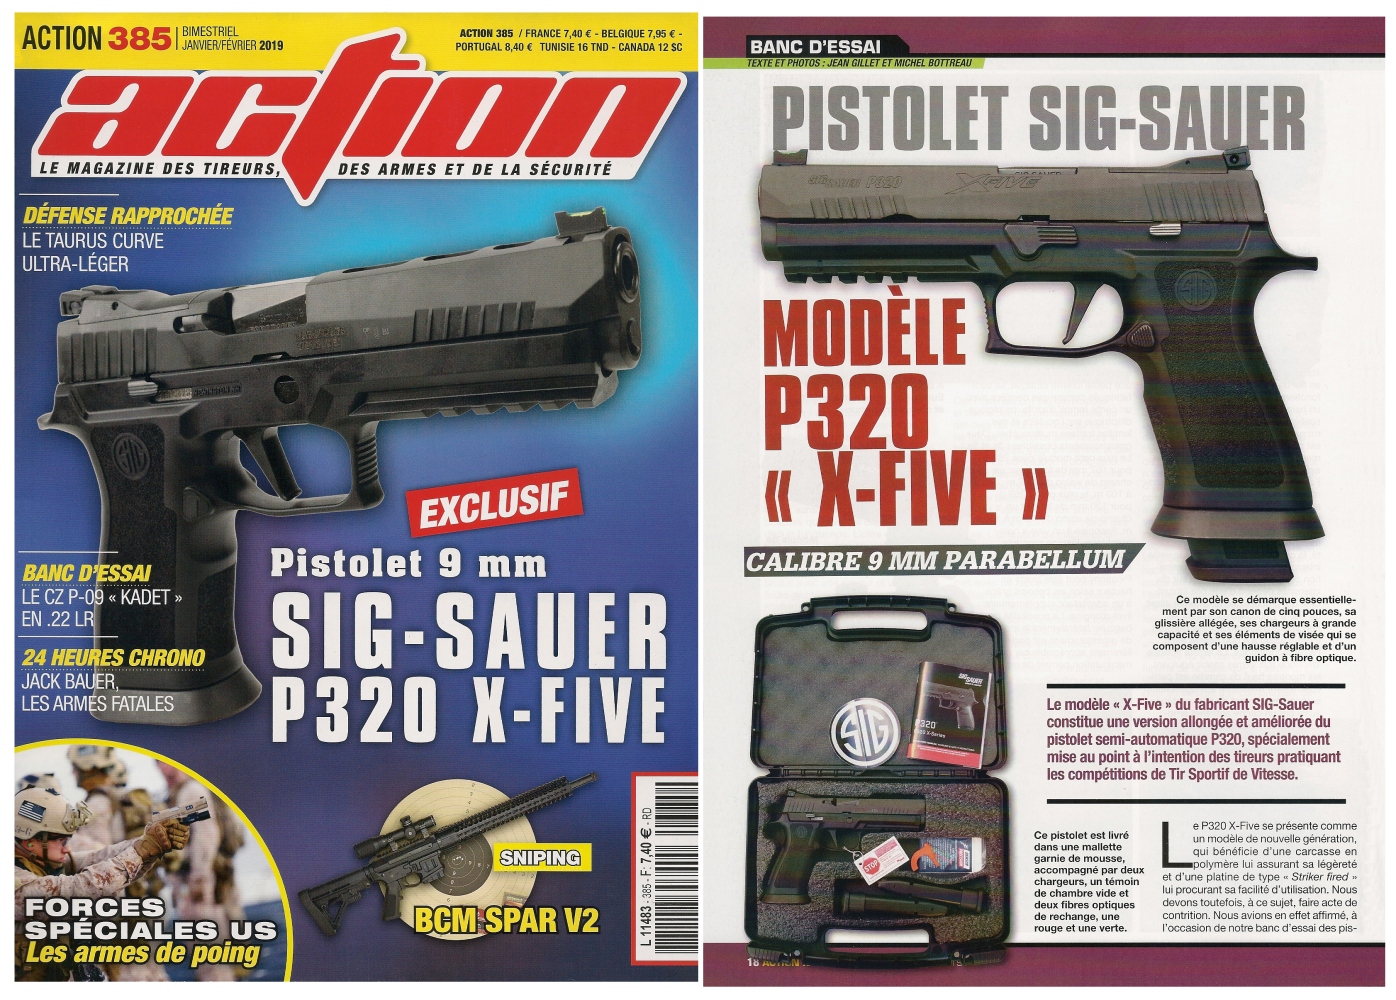 Le banc d’essai du pistolet SIG-Sauer P320 X-Five a été publié sur 6 pages dans le magazine Action n°385 (janvier/février 2019). 